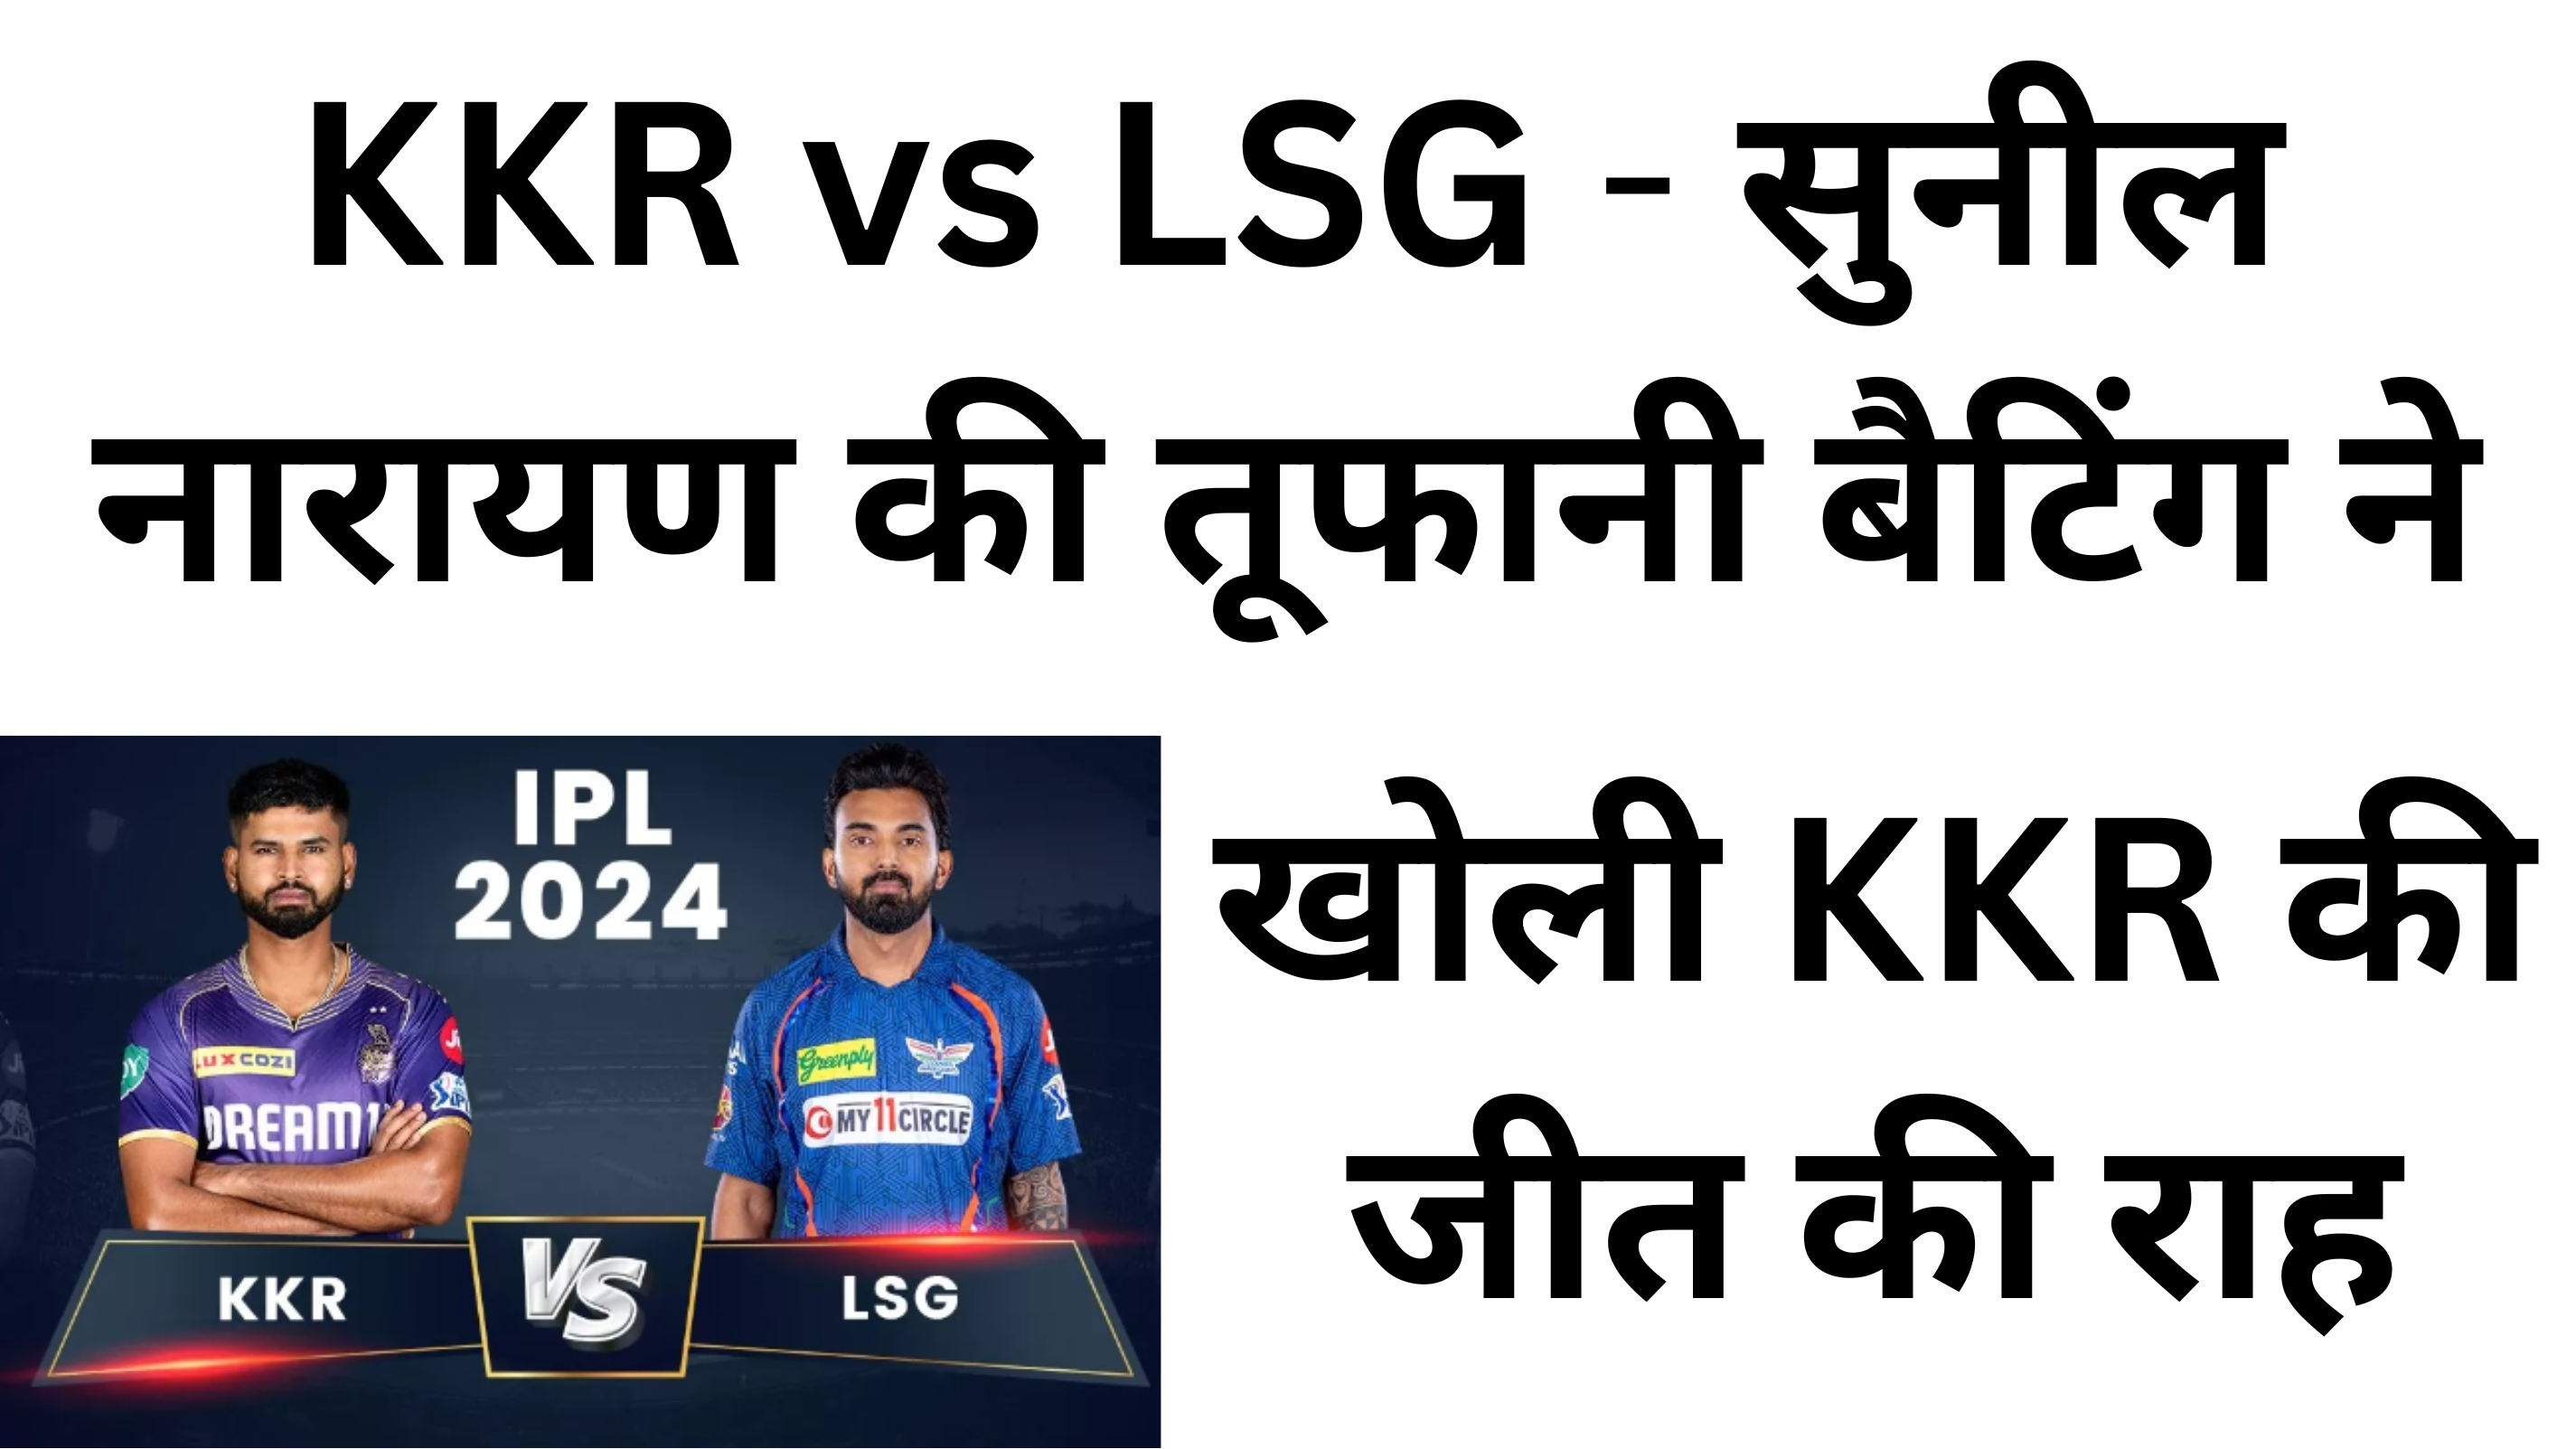 KKR vs LSG